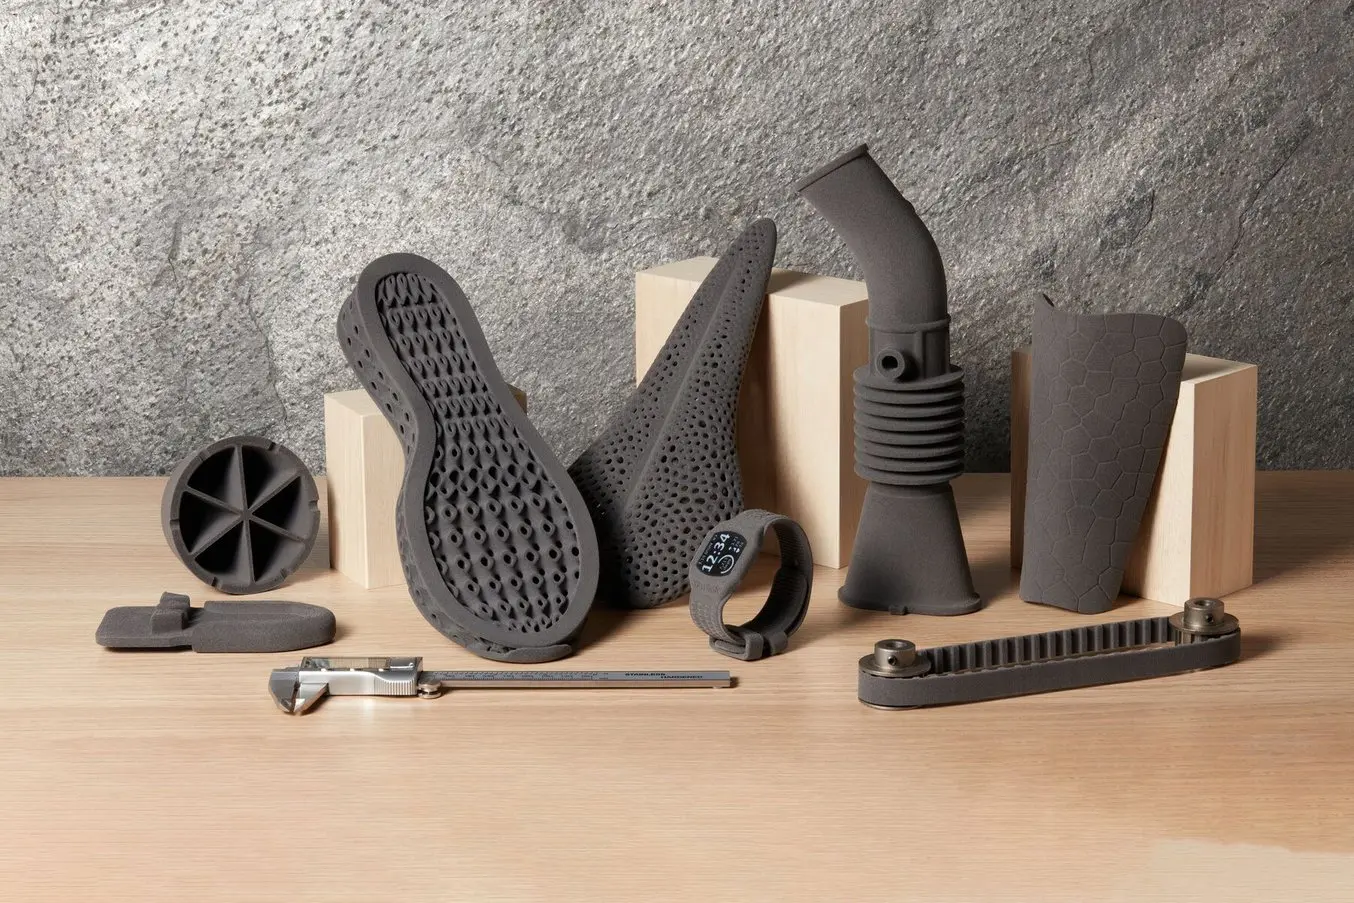 Piezas flexibles impresas en 3D mediante SLS, como dispositivos de tecnología ponible, equipamiento deportivo de alto rendimiento y plantillas para calzado